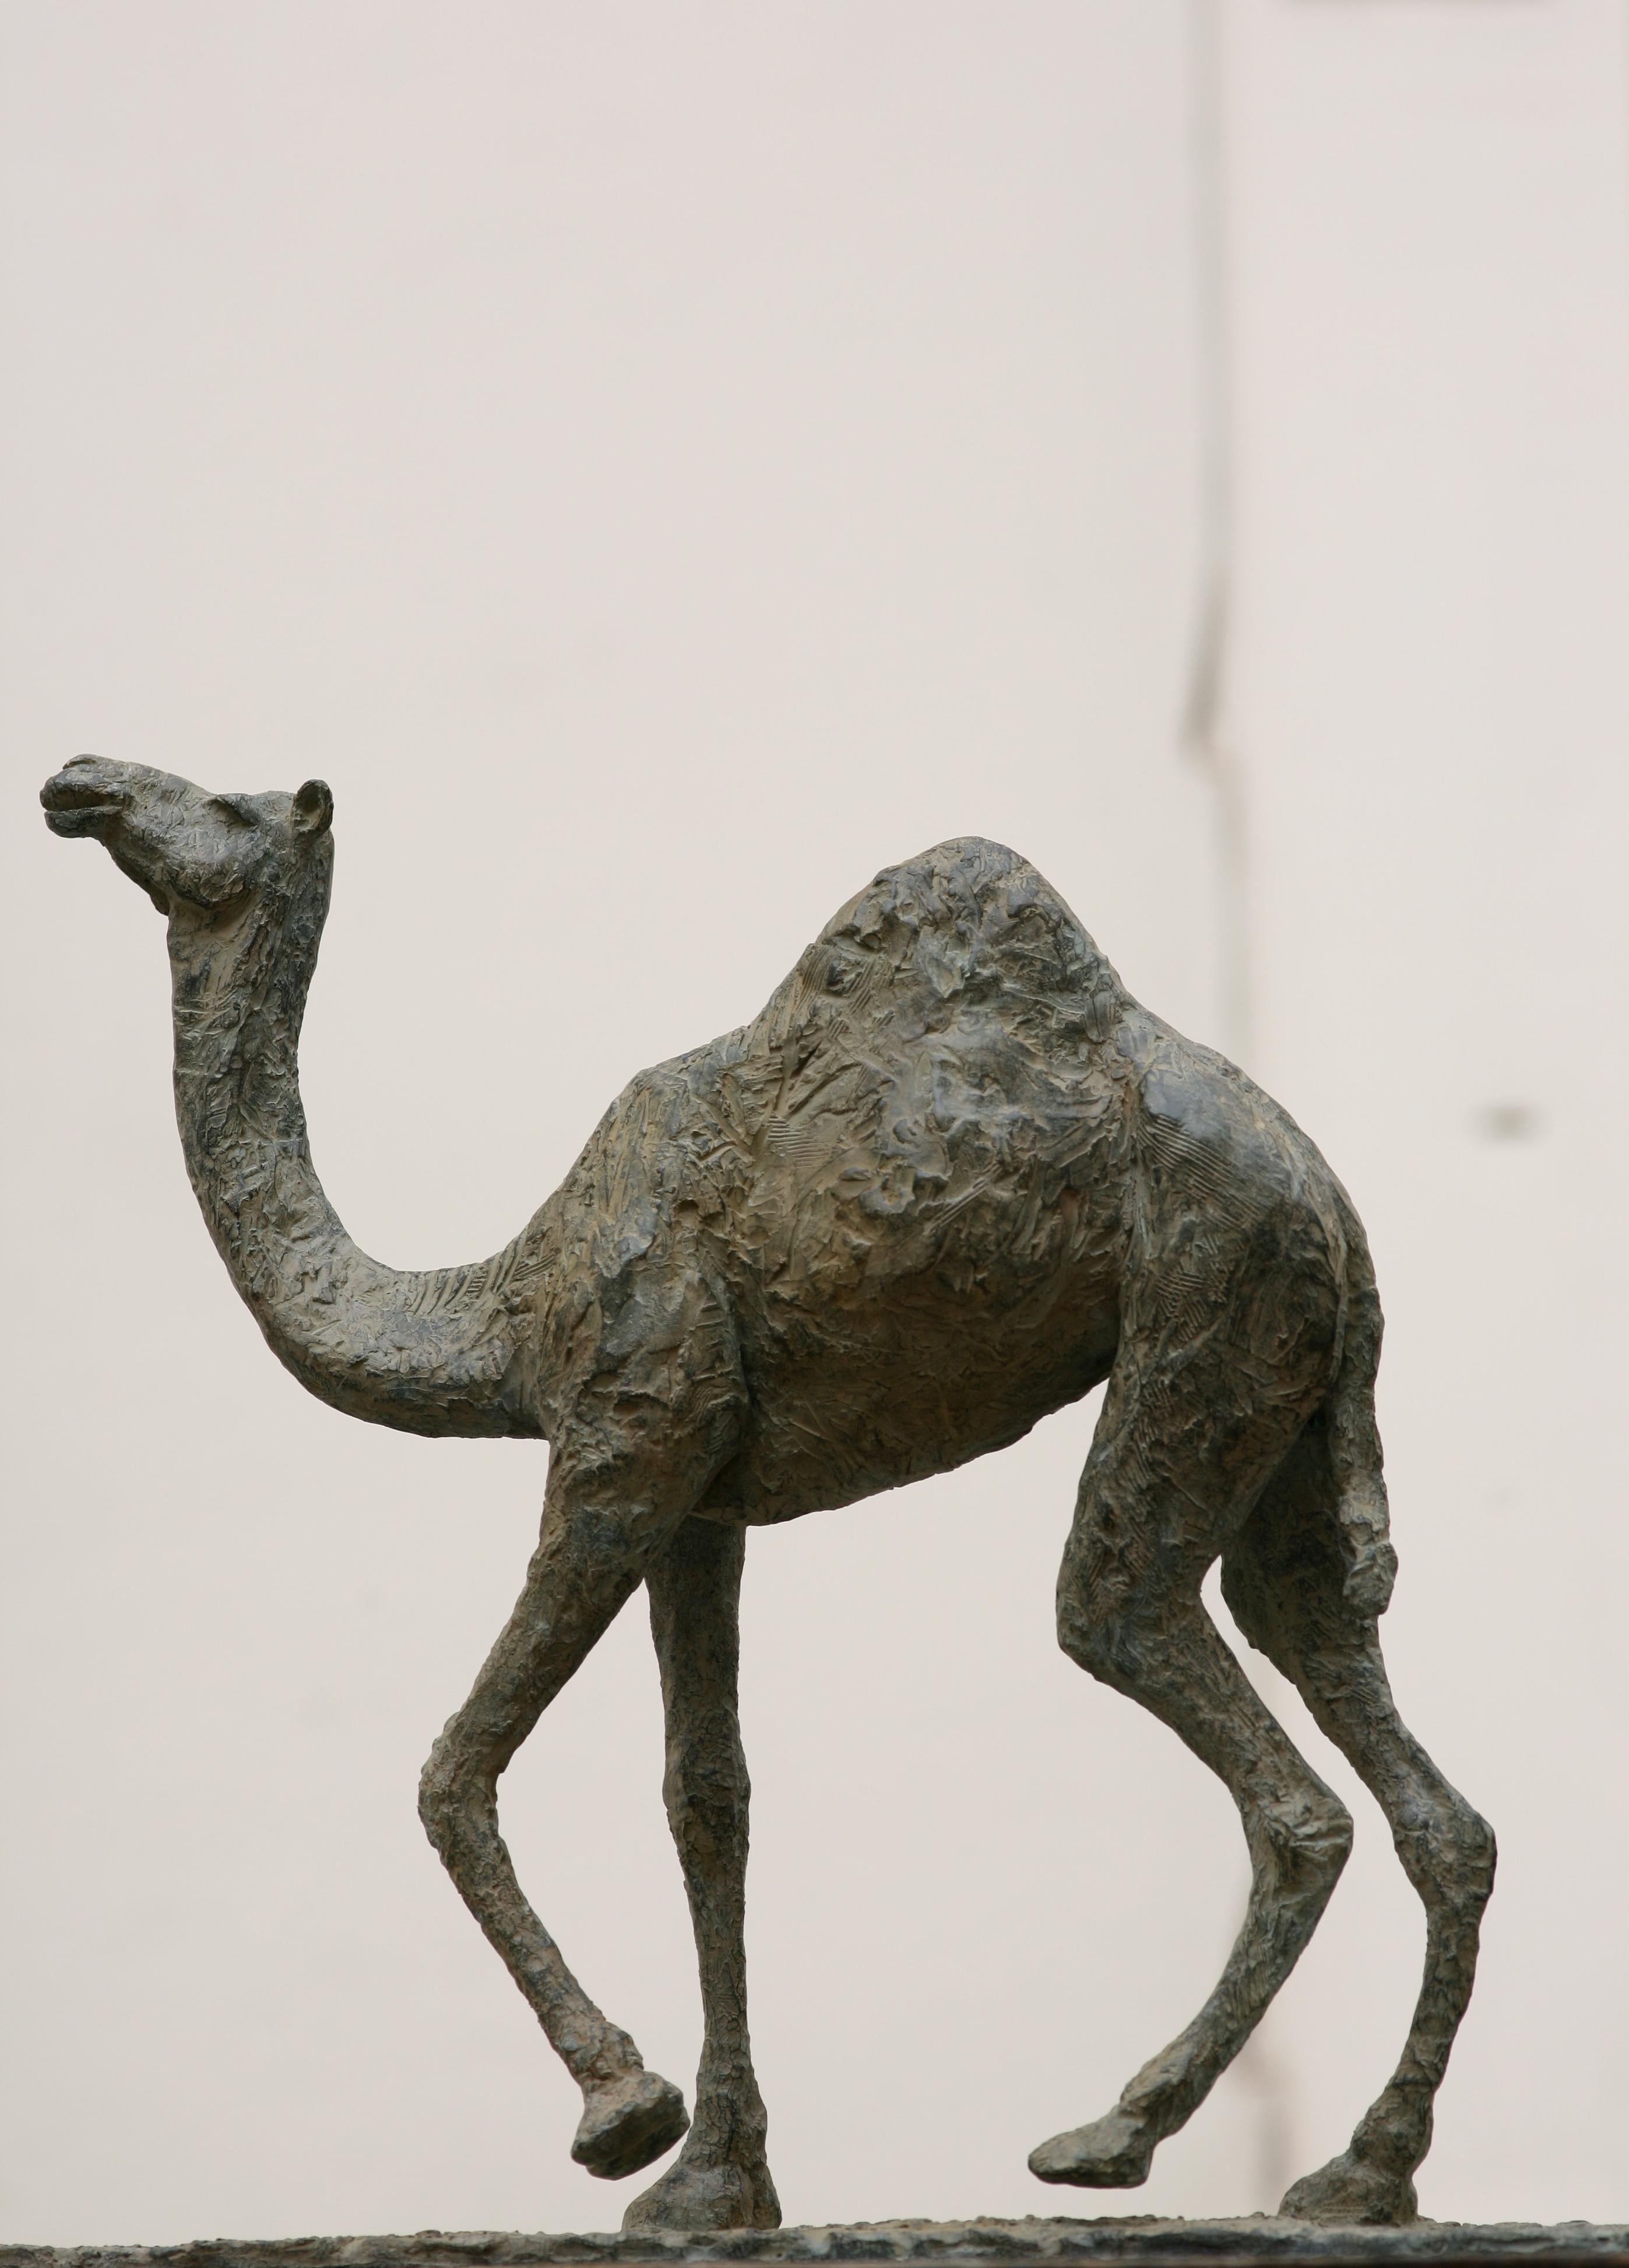 Das Kamel ist eine Bronzeskulptur der französischen Künstlerin Marine de Soos mit den Maßen 56 × 75 × 17 cm (22 × 29,5 × 6,7 in). 
Die Skulptur ist signiert und nummeriert, gehört zu einer limitierten Auflage von 8 Exemplaren + 4 Künstlerabzügen und